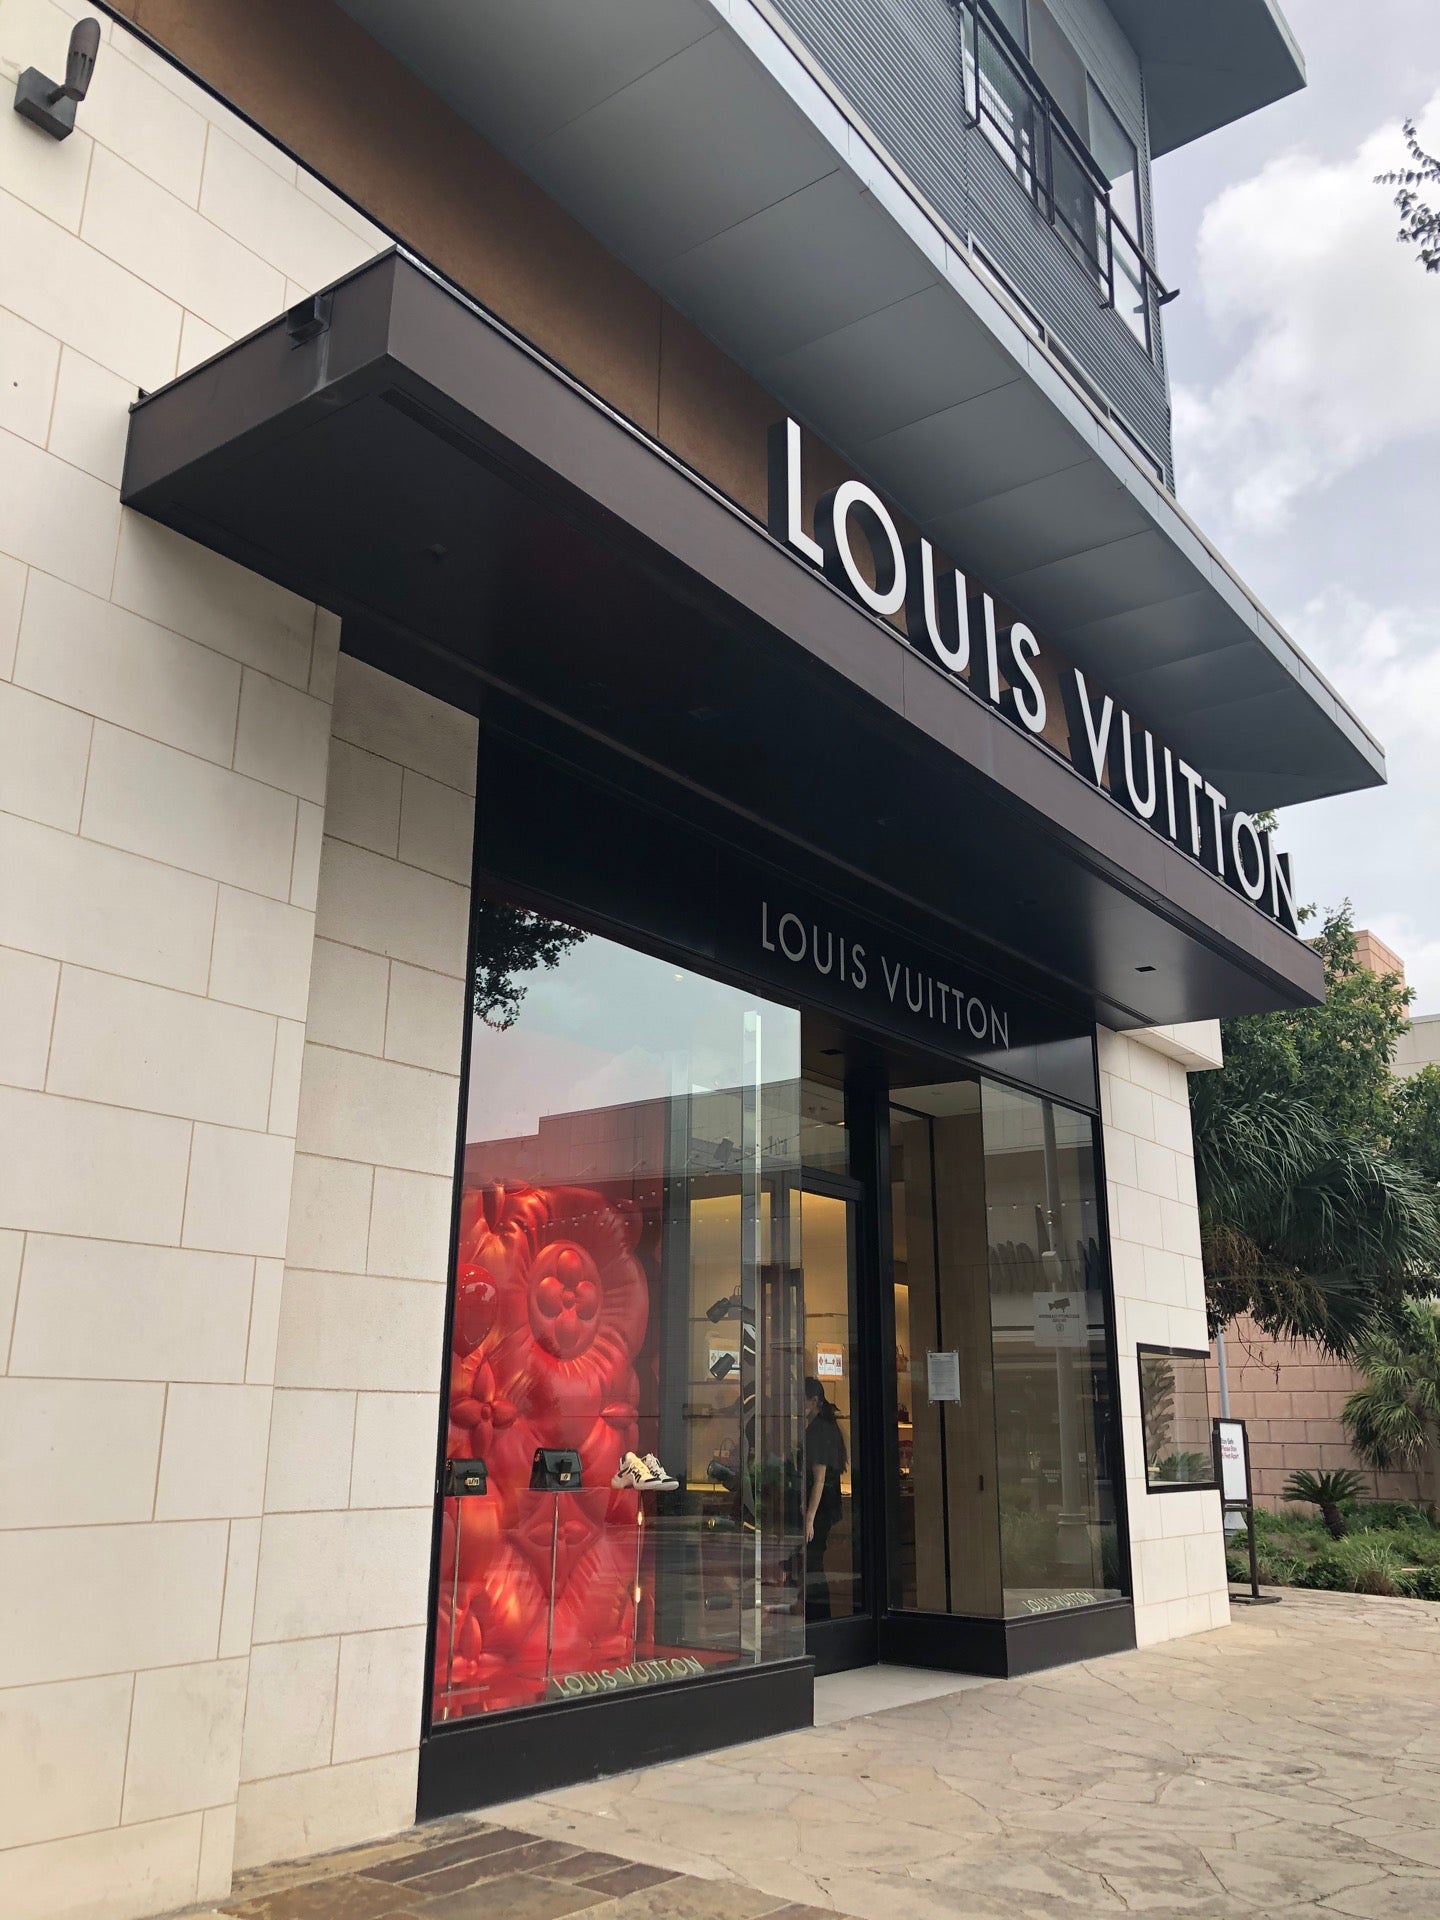 Louis Vuitton Austin Domain, 11600 Century Oaks Terrace, Level 1